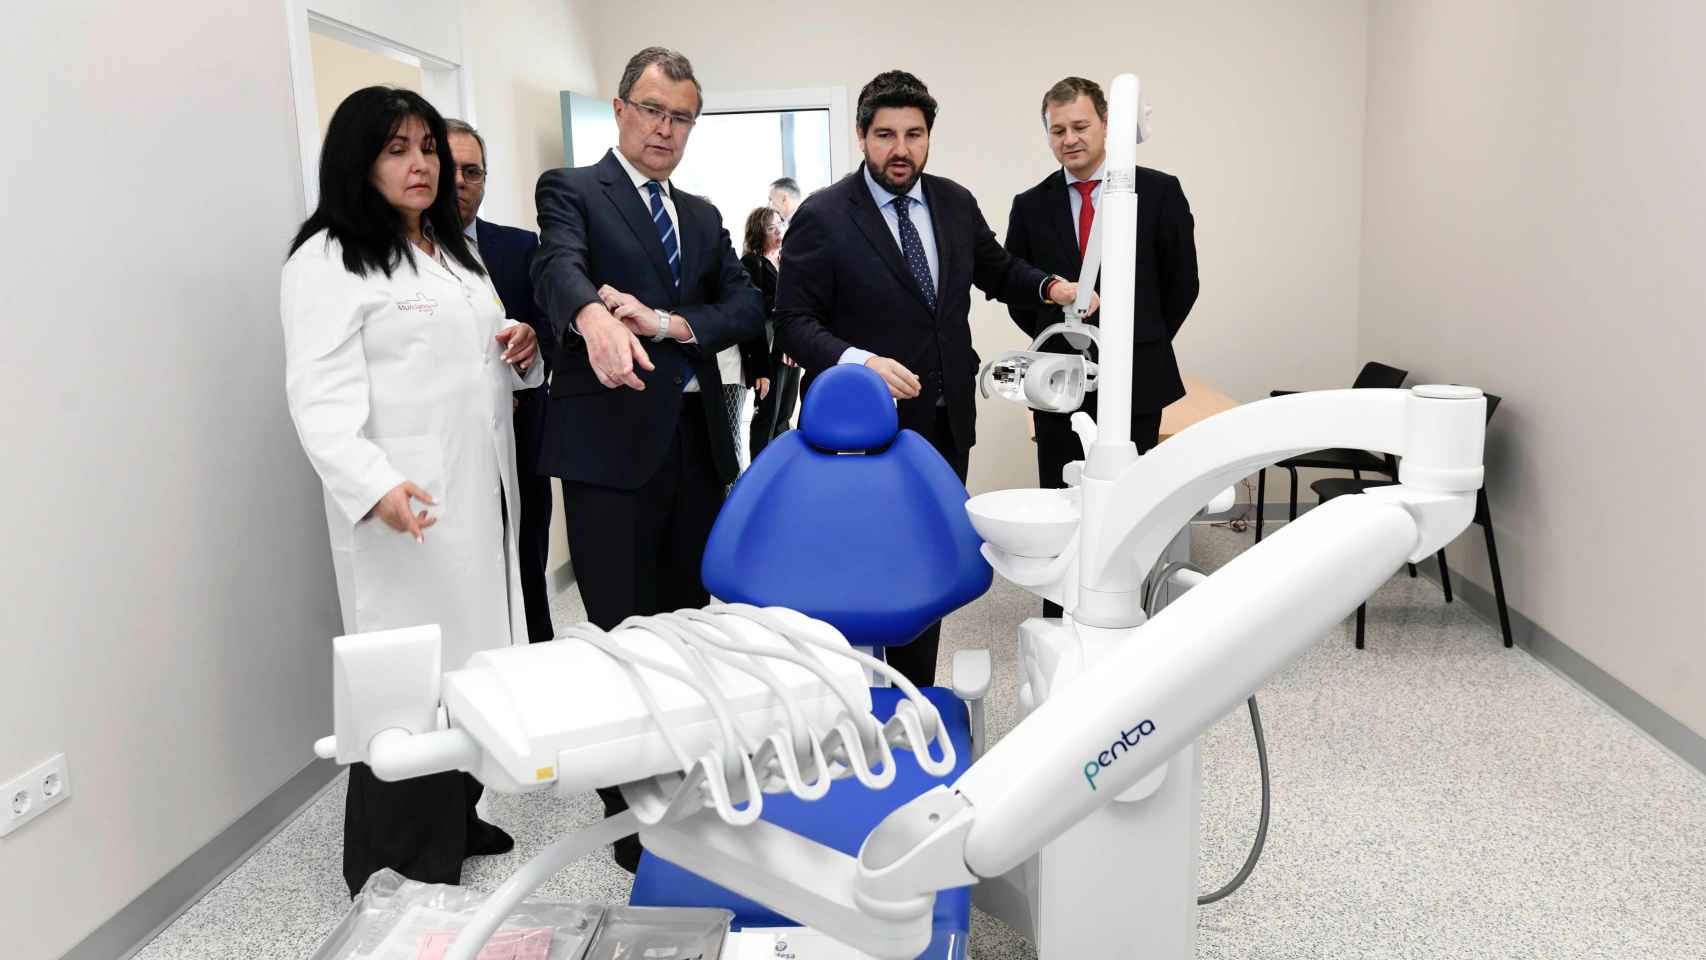 El alcalde de Murcia, José ballesta (i), junto a Fernando López Miras (d) visitan las instalaciones del nuevo Centro de Salud de Sangonera la Verde tras su inauguración.